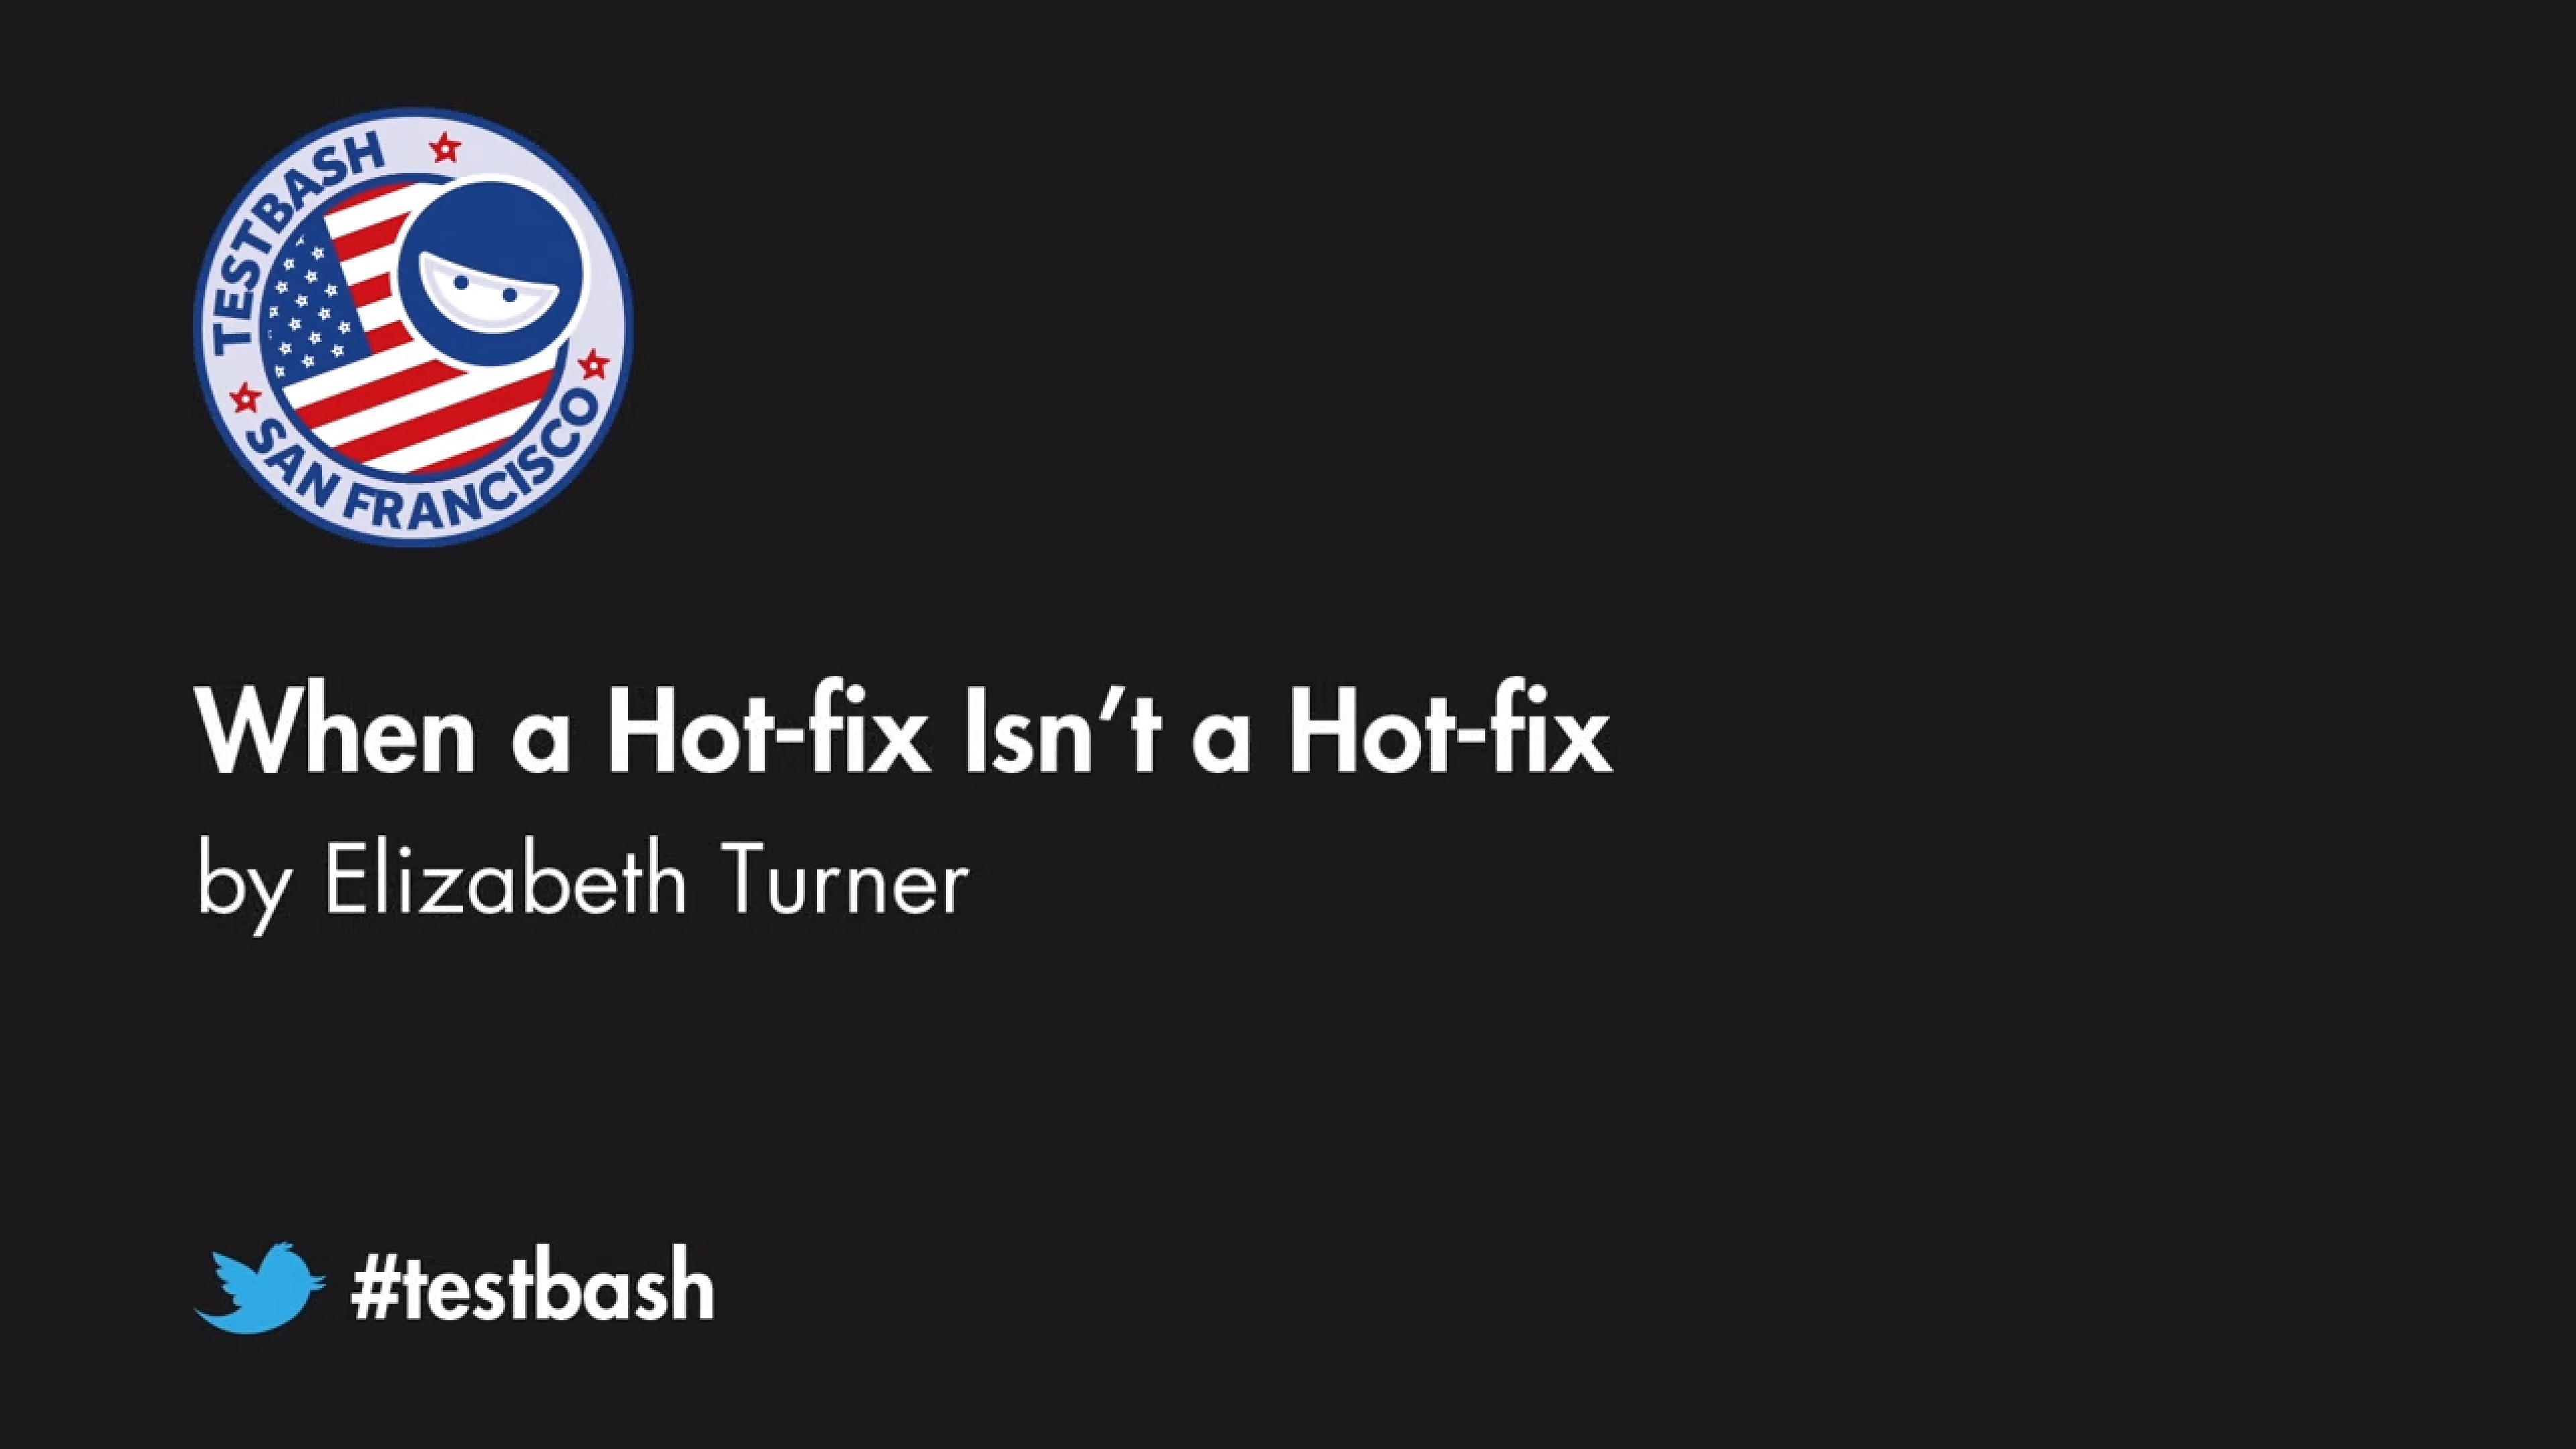 When a Hot-fix Isn't a Hot-fix - Elizabeth Turner